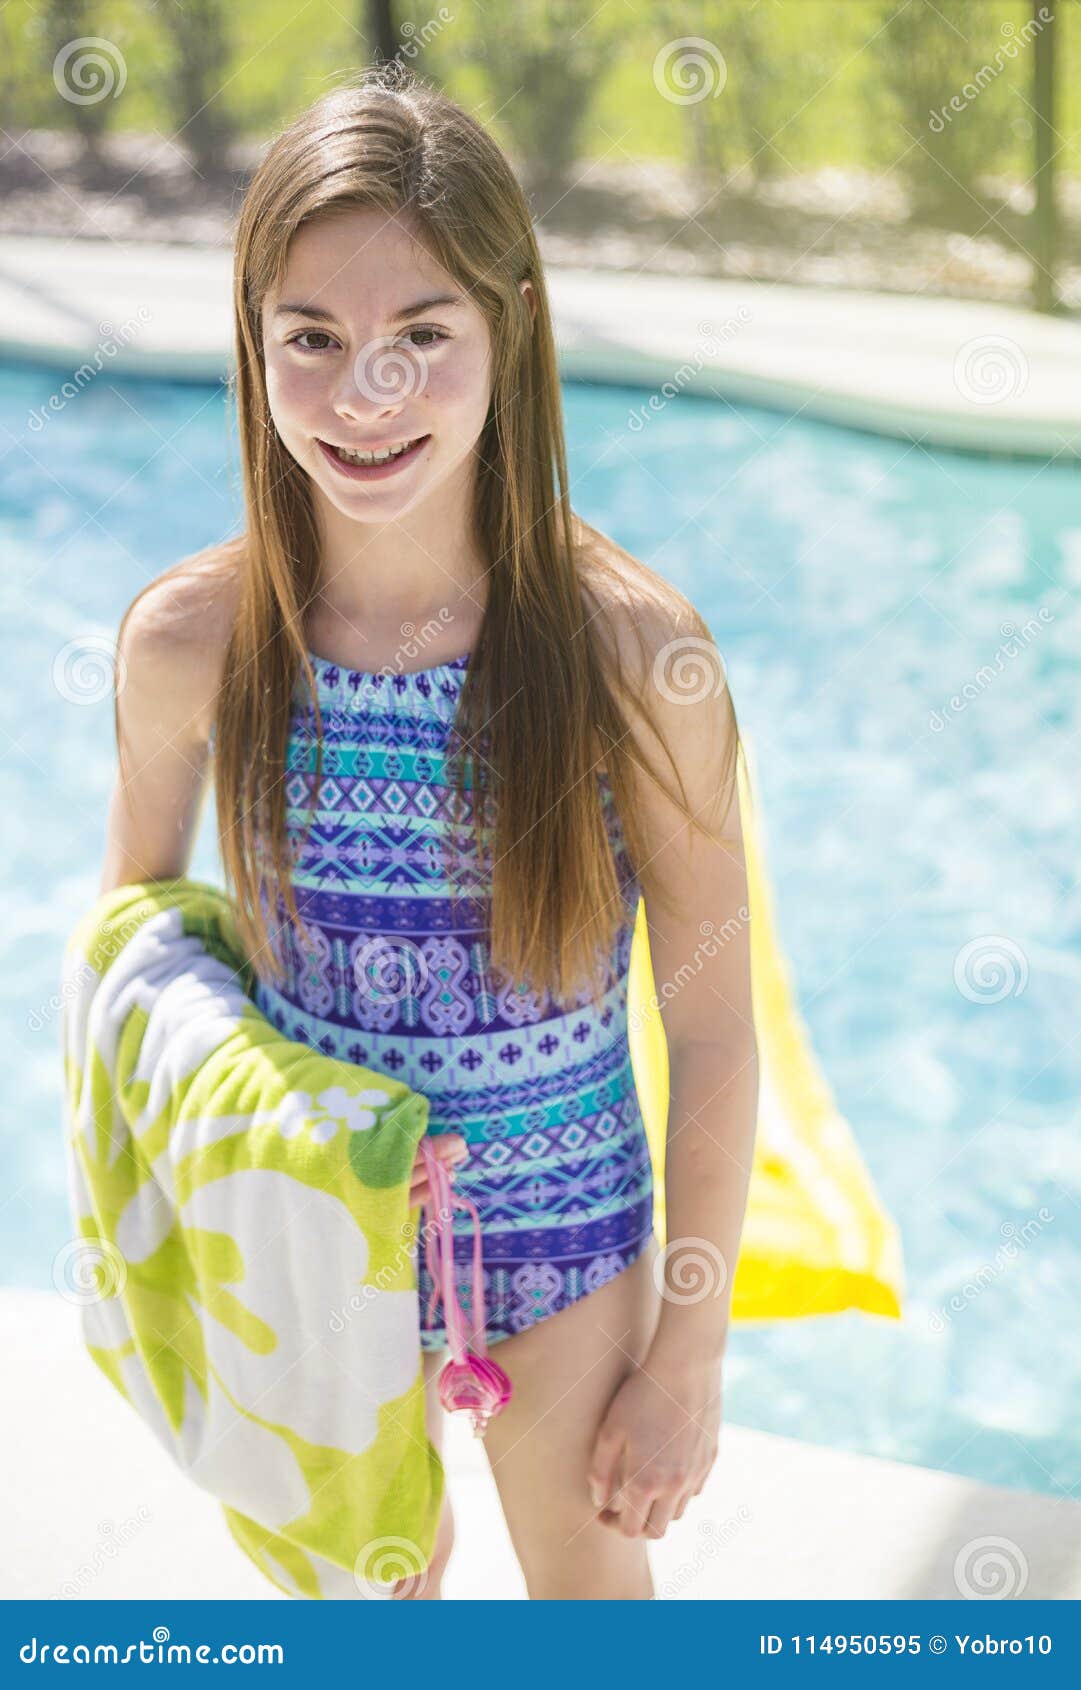 Teenage Girl Going Swimming in an ...